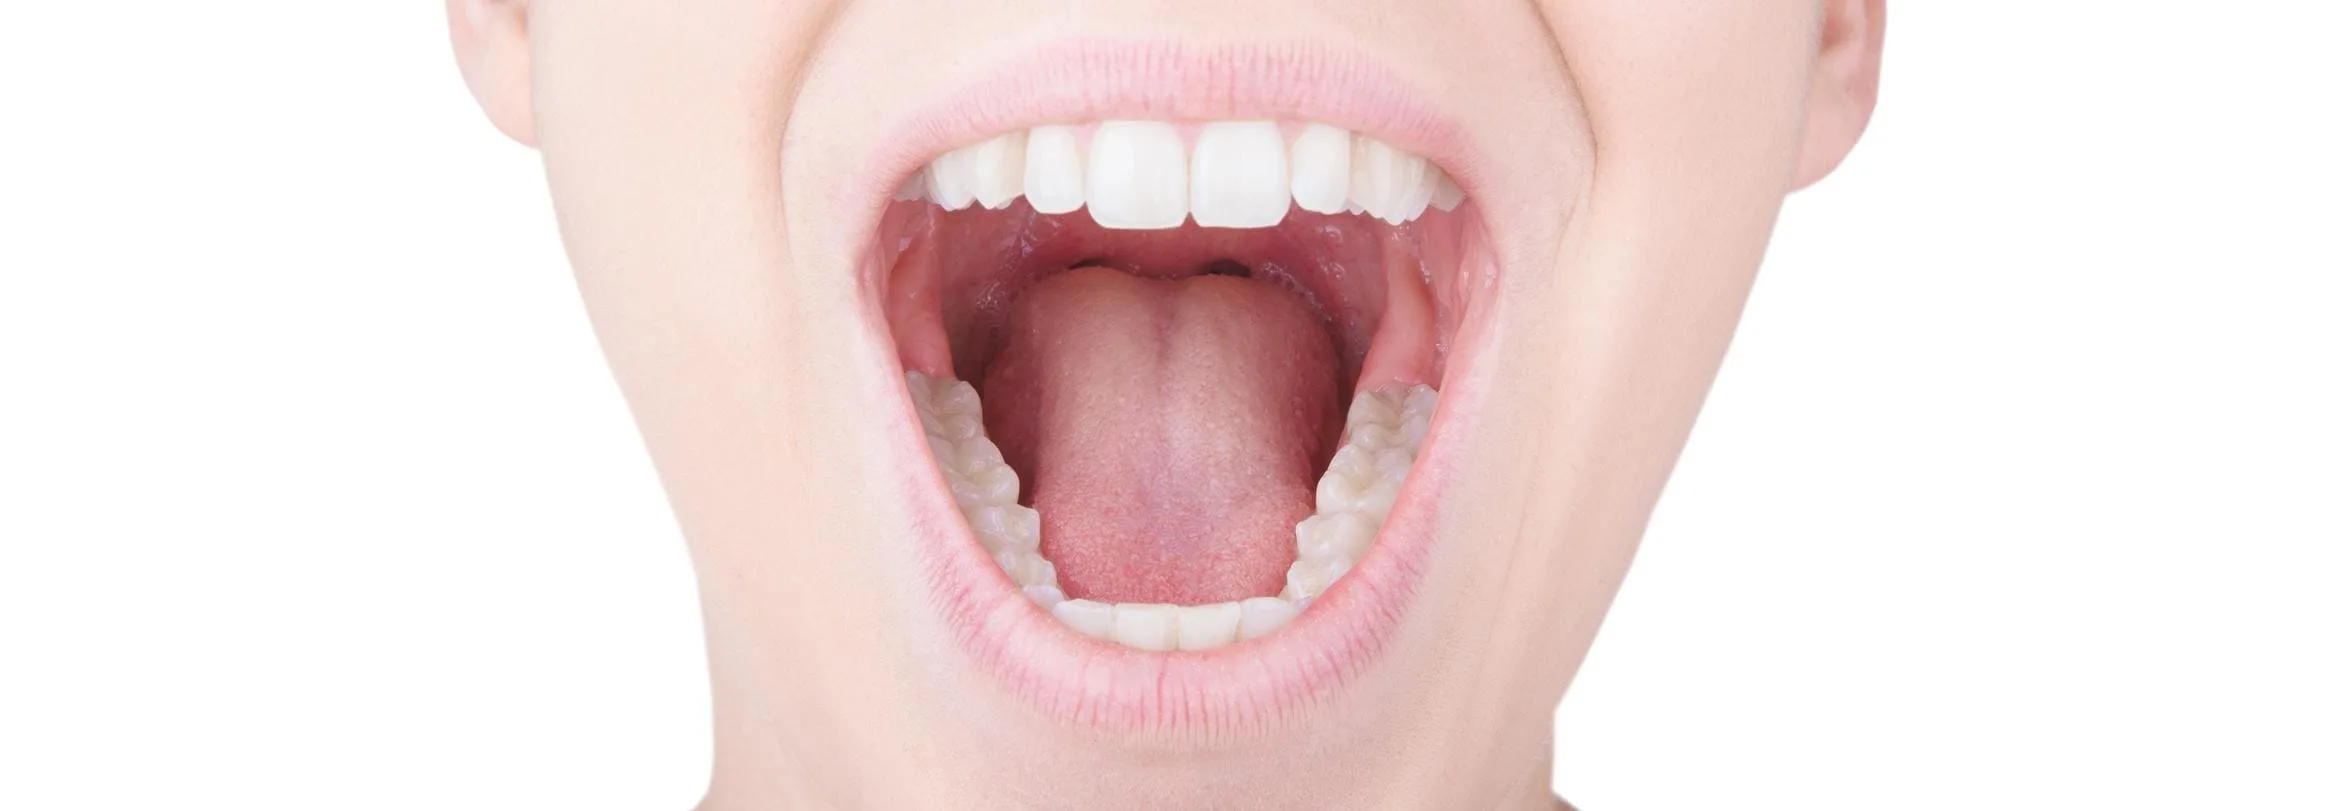 Zęby zatrzymane - jak diagnozować i leczyć?